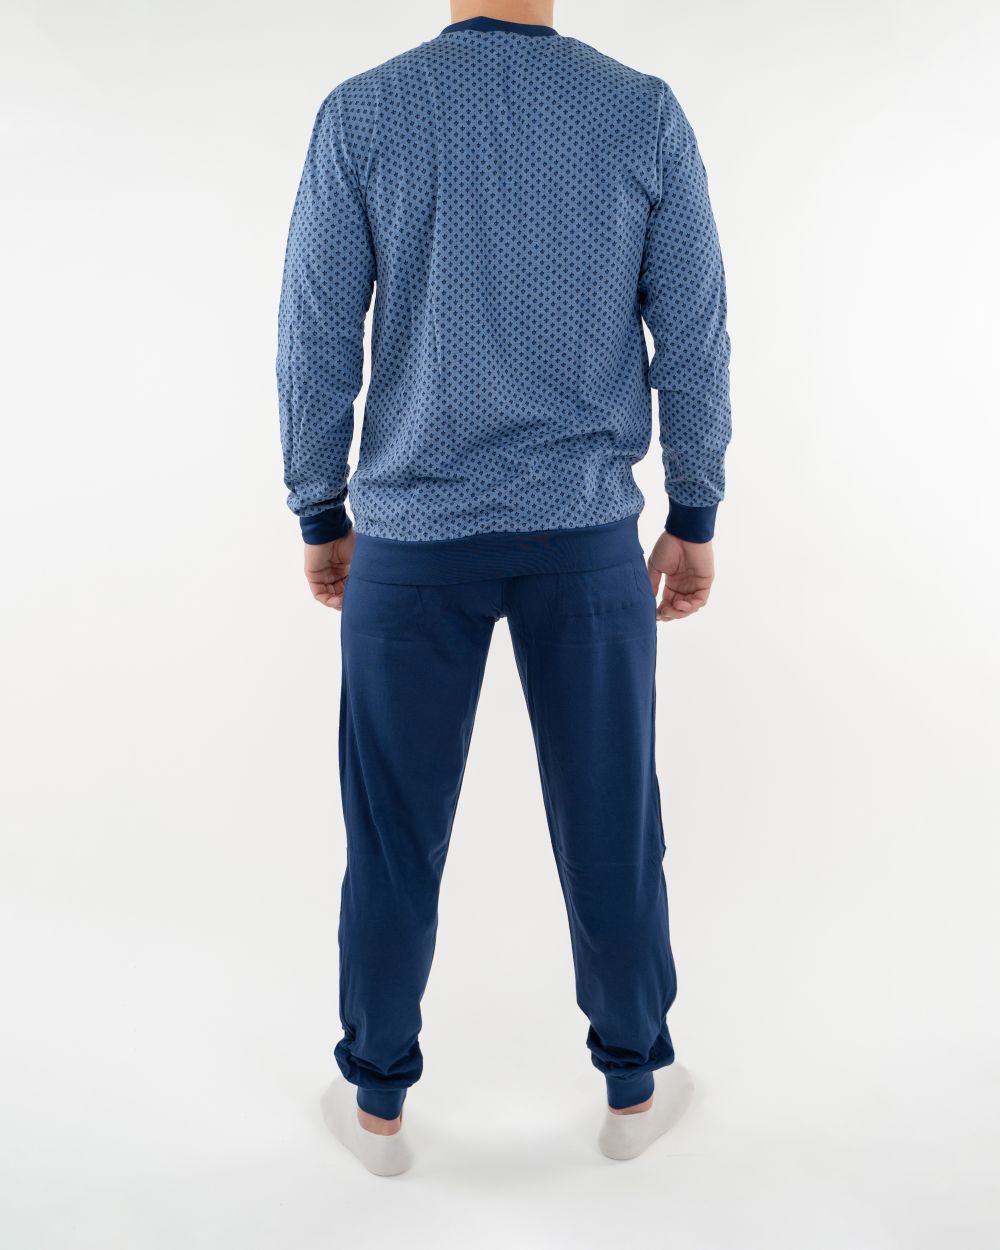 Navigare Intimo muška pidžama jeans boje